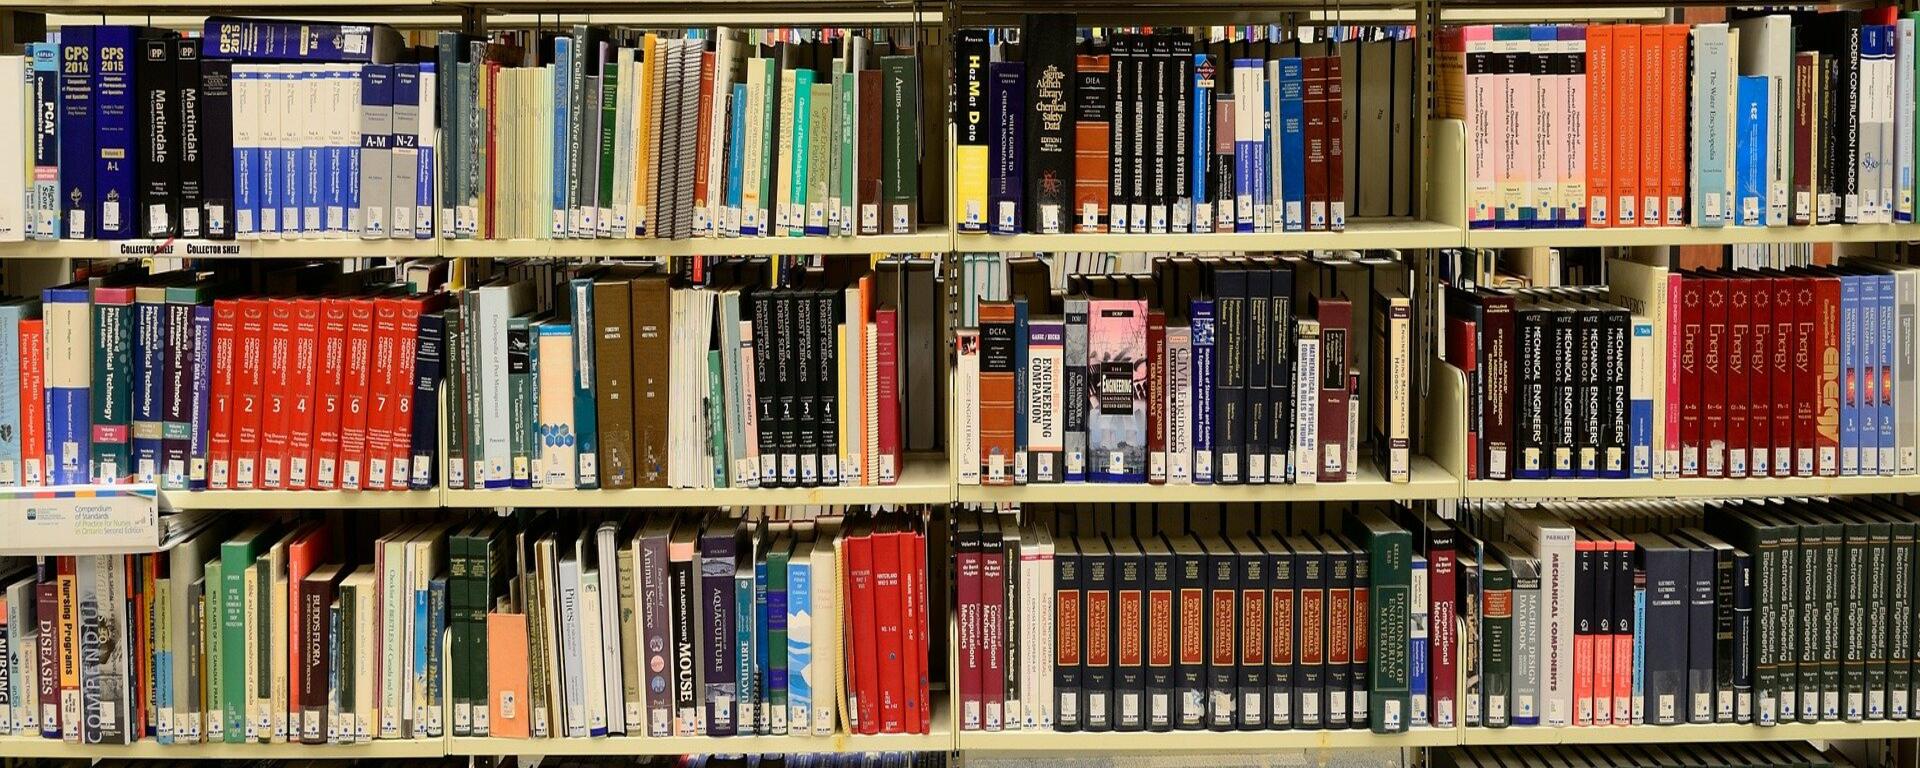 Image of libary shelves